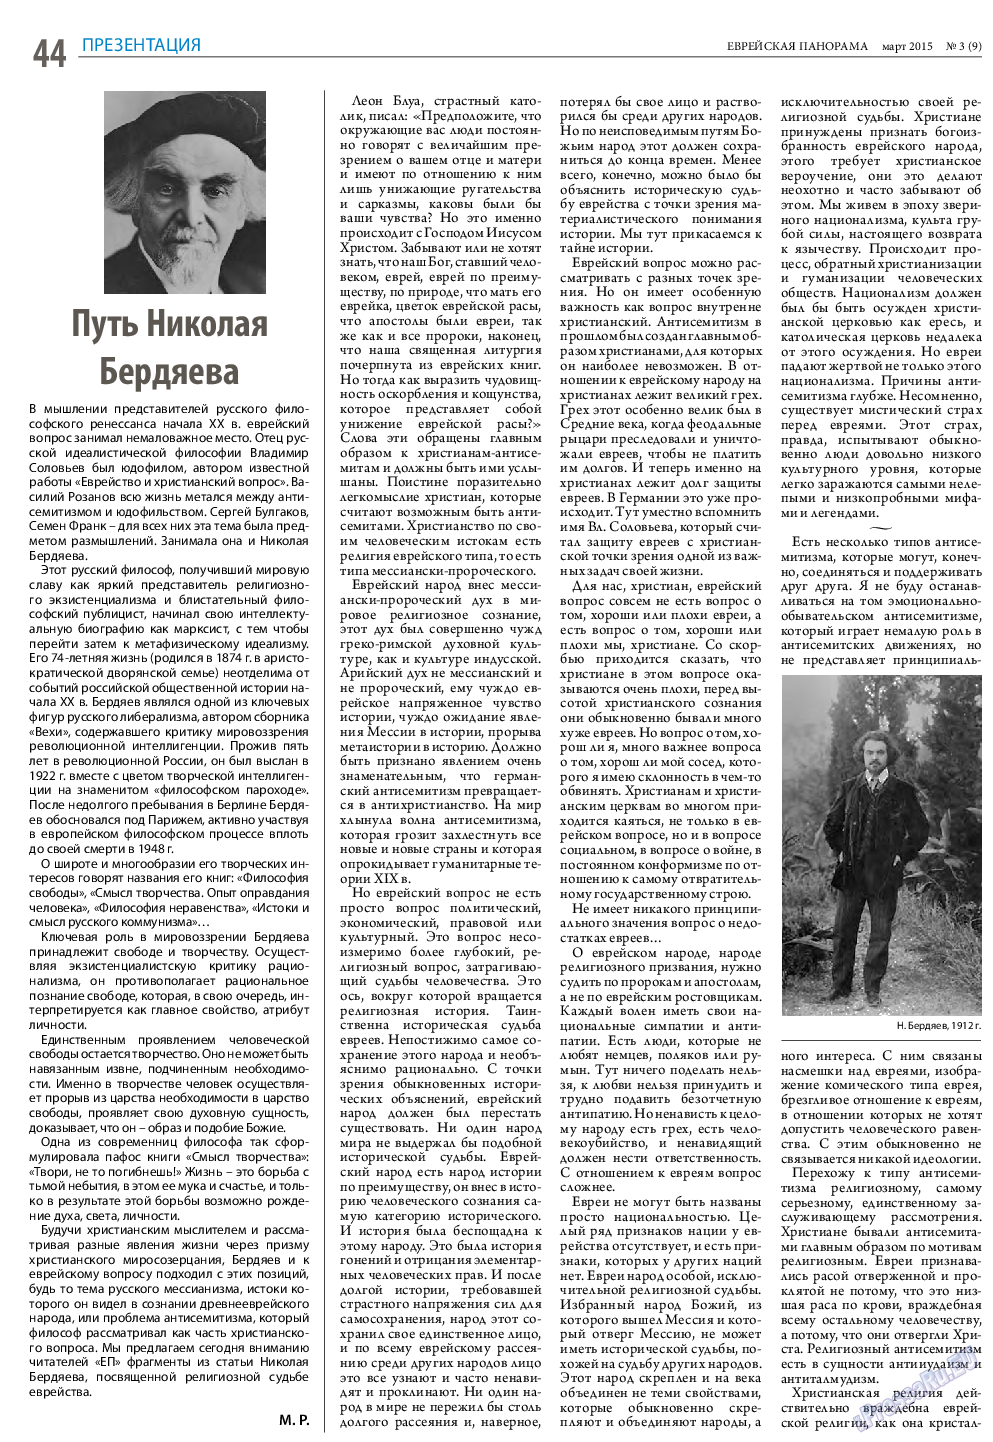 Еврейская панорама (газета). 2015 год, номер 3, стр. 44